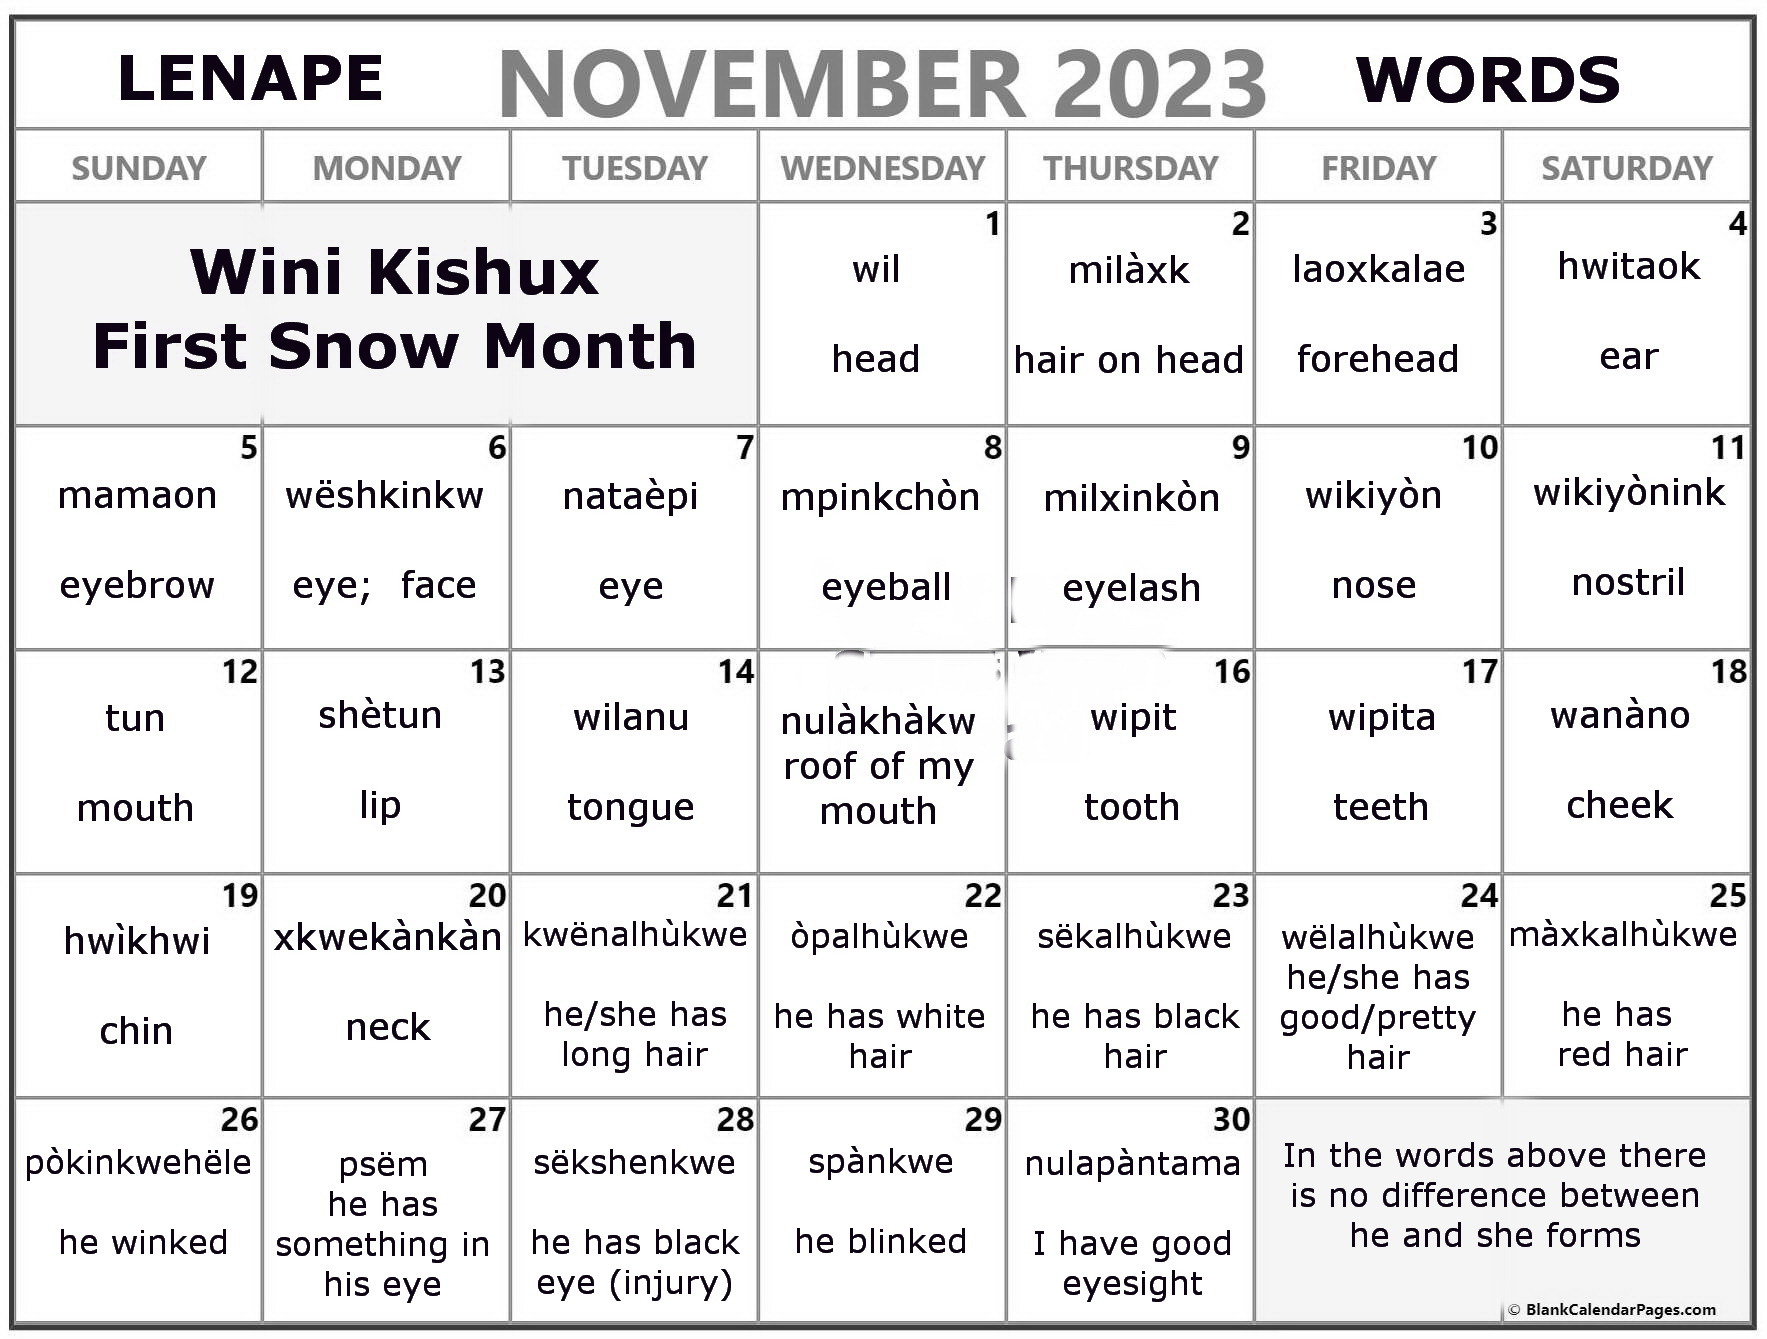 November 2023 Lenape Word-a-Day Calendar